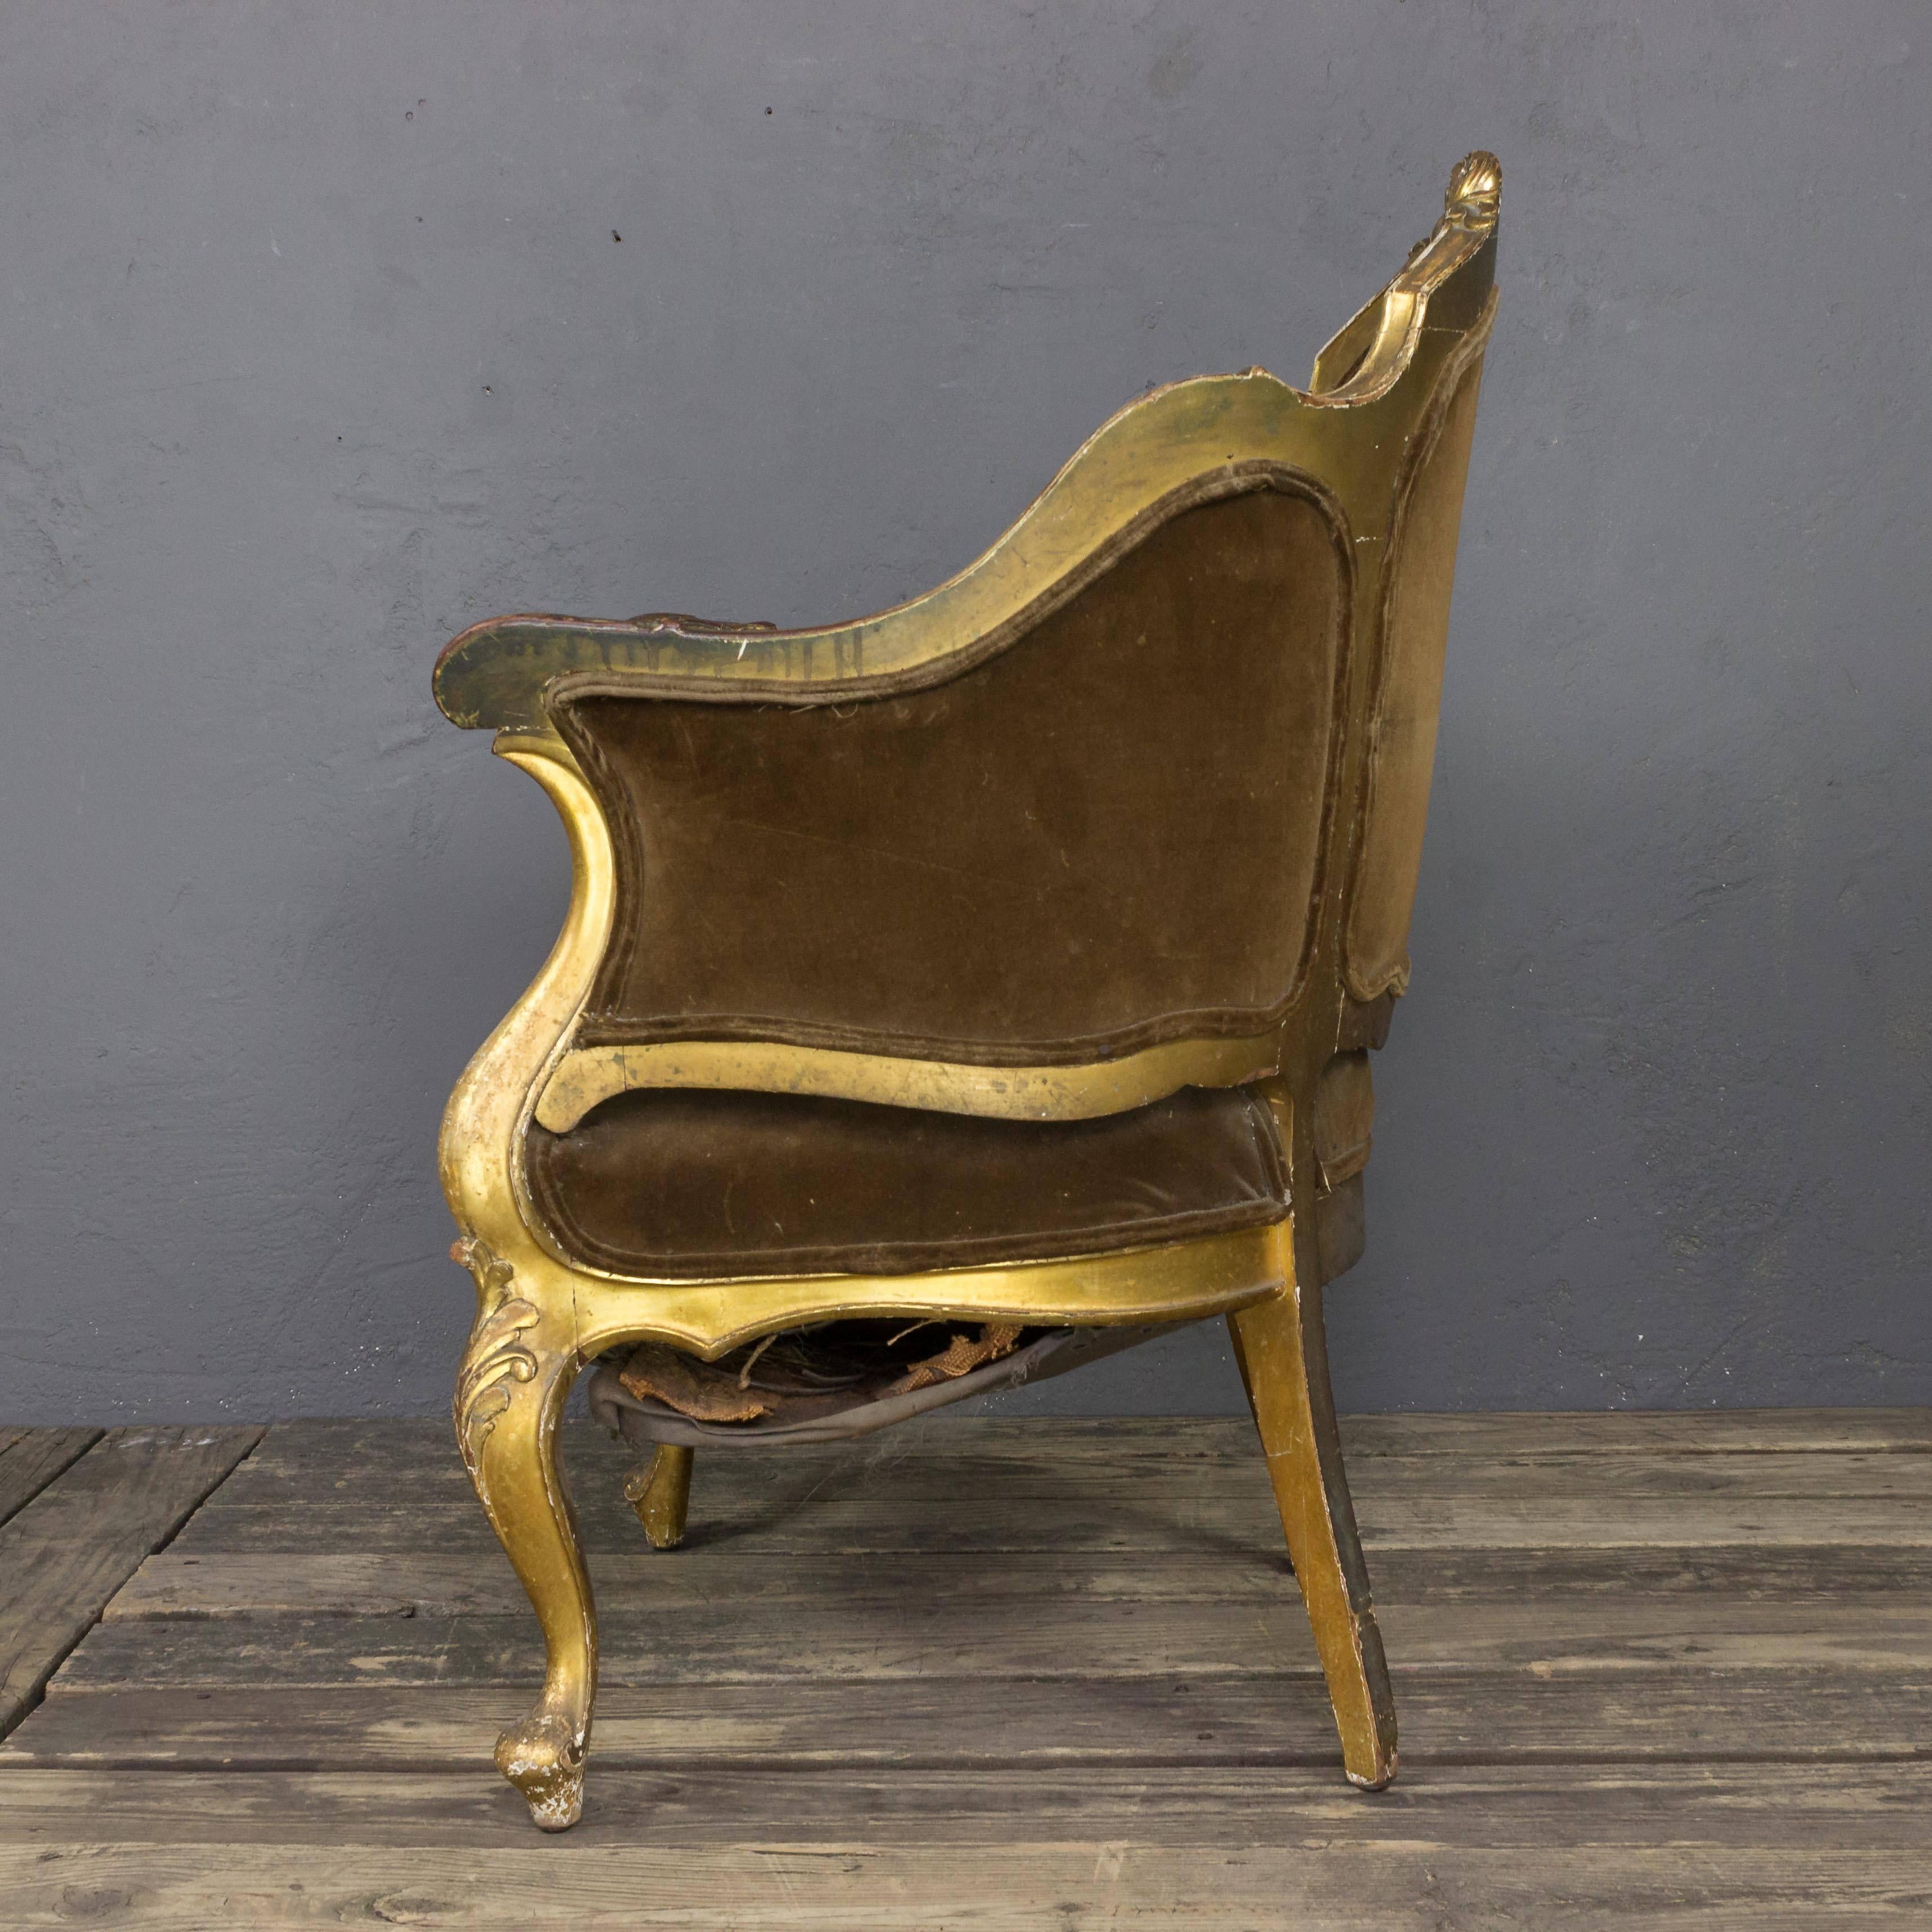 Un exquis fauteuil en bois doré français du XIXe siècle. Cette pièce unique est le pont parfait entre les styles nouvelle et ancienne école, mêlant des notes d'esthétique classique aux tendances modernes. Chaque courbe du cadre en bois sculpté est